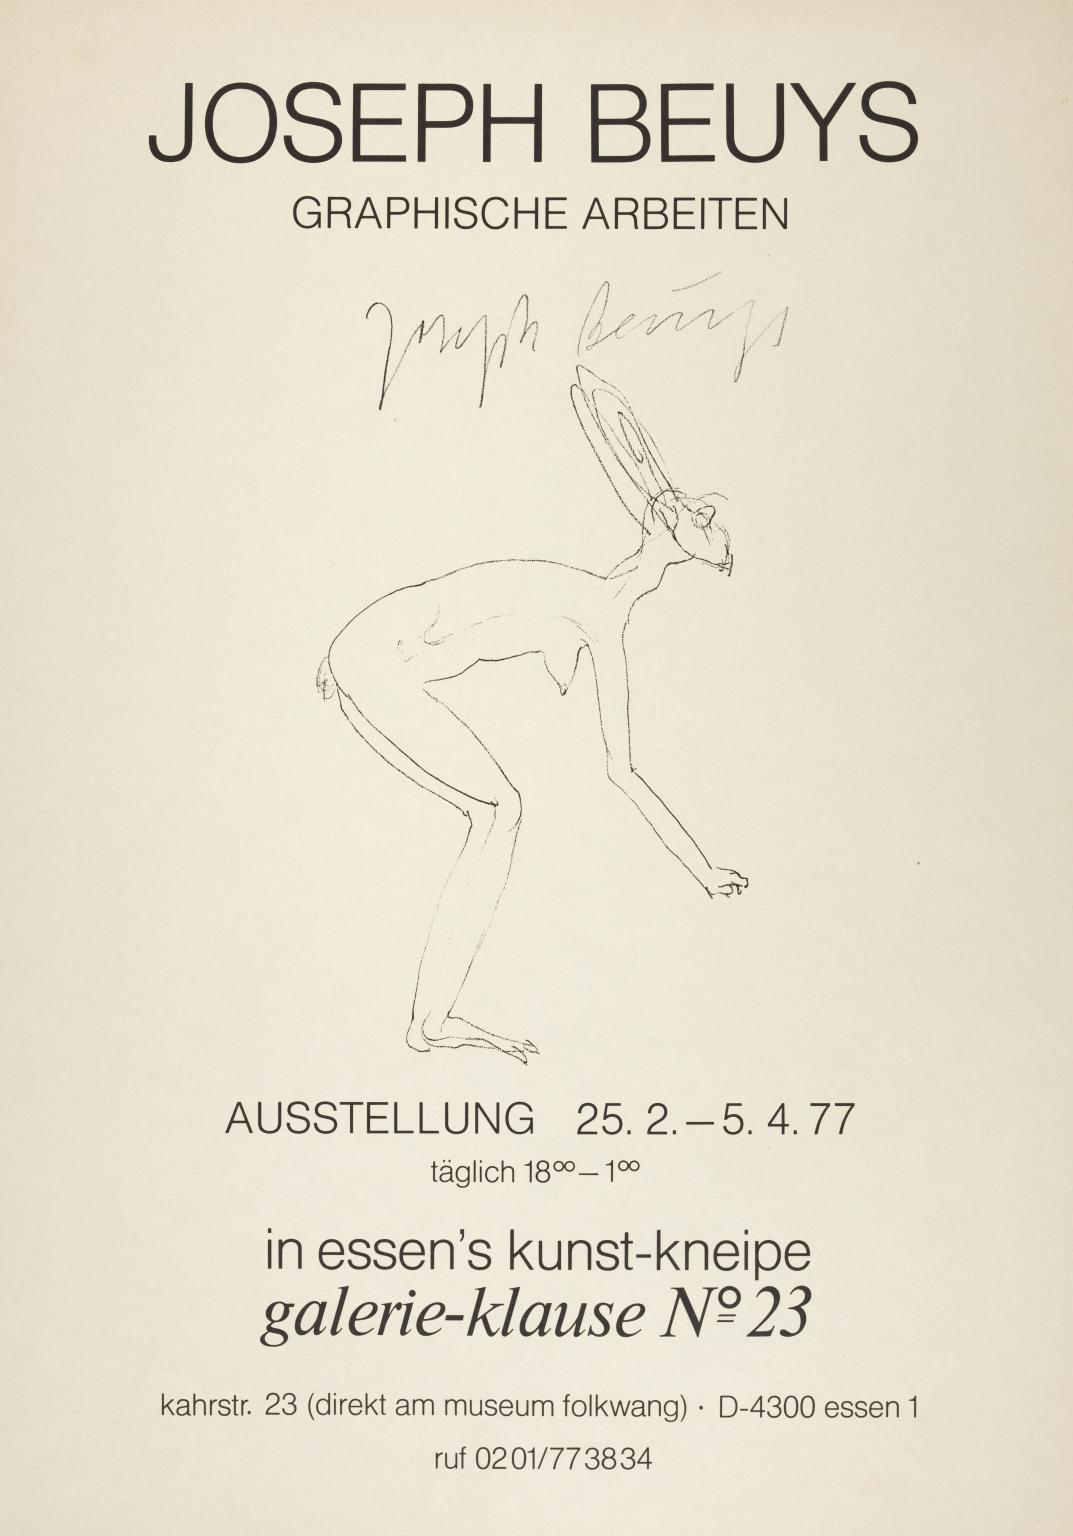 Joseph Beuys: Graphische Arbeiten. Galerie-klause No. 23, Essen. 1977